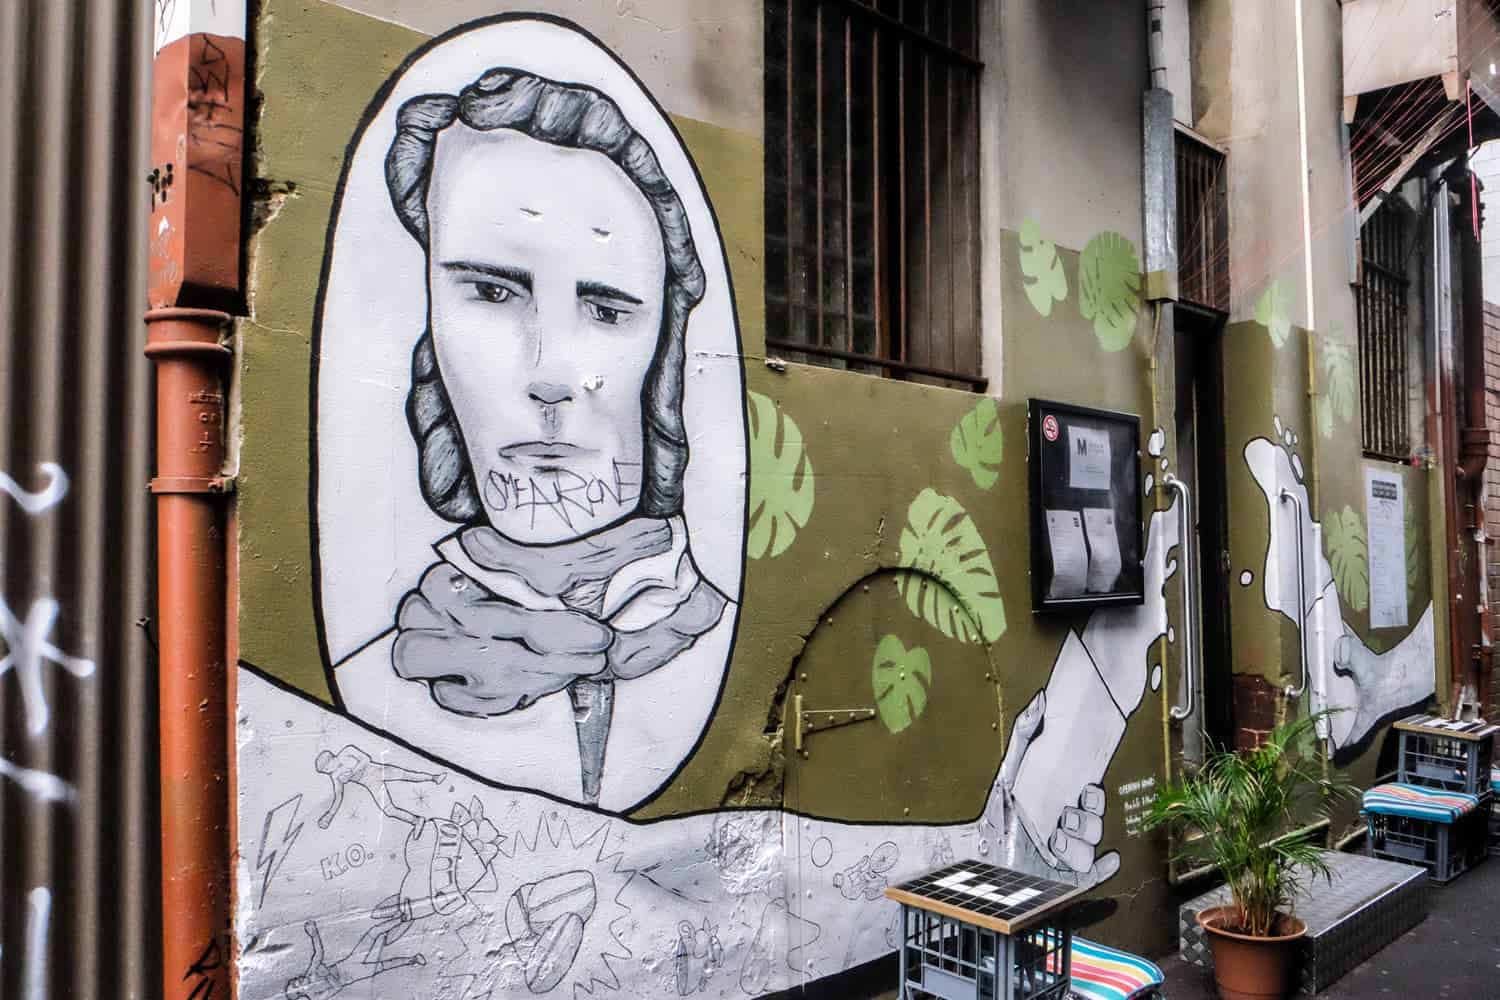 Arte callejero en la pared de un café en los callejones escondidos de Perth, Australia